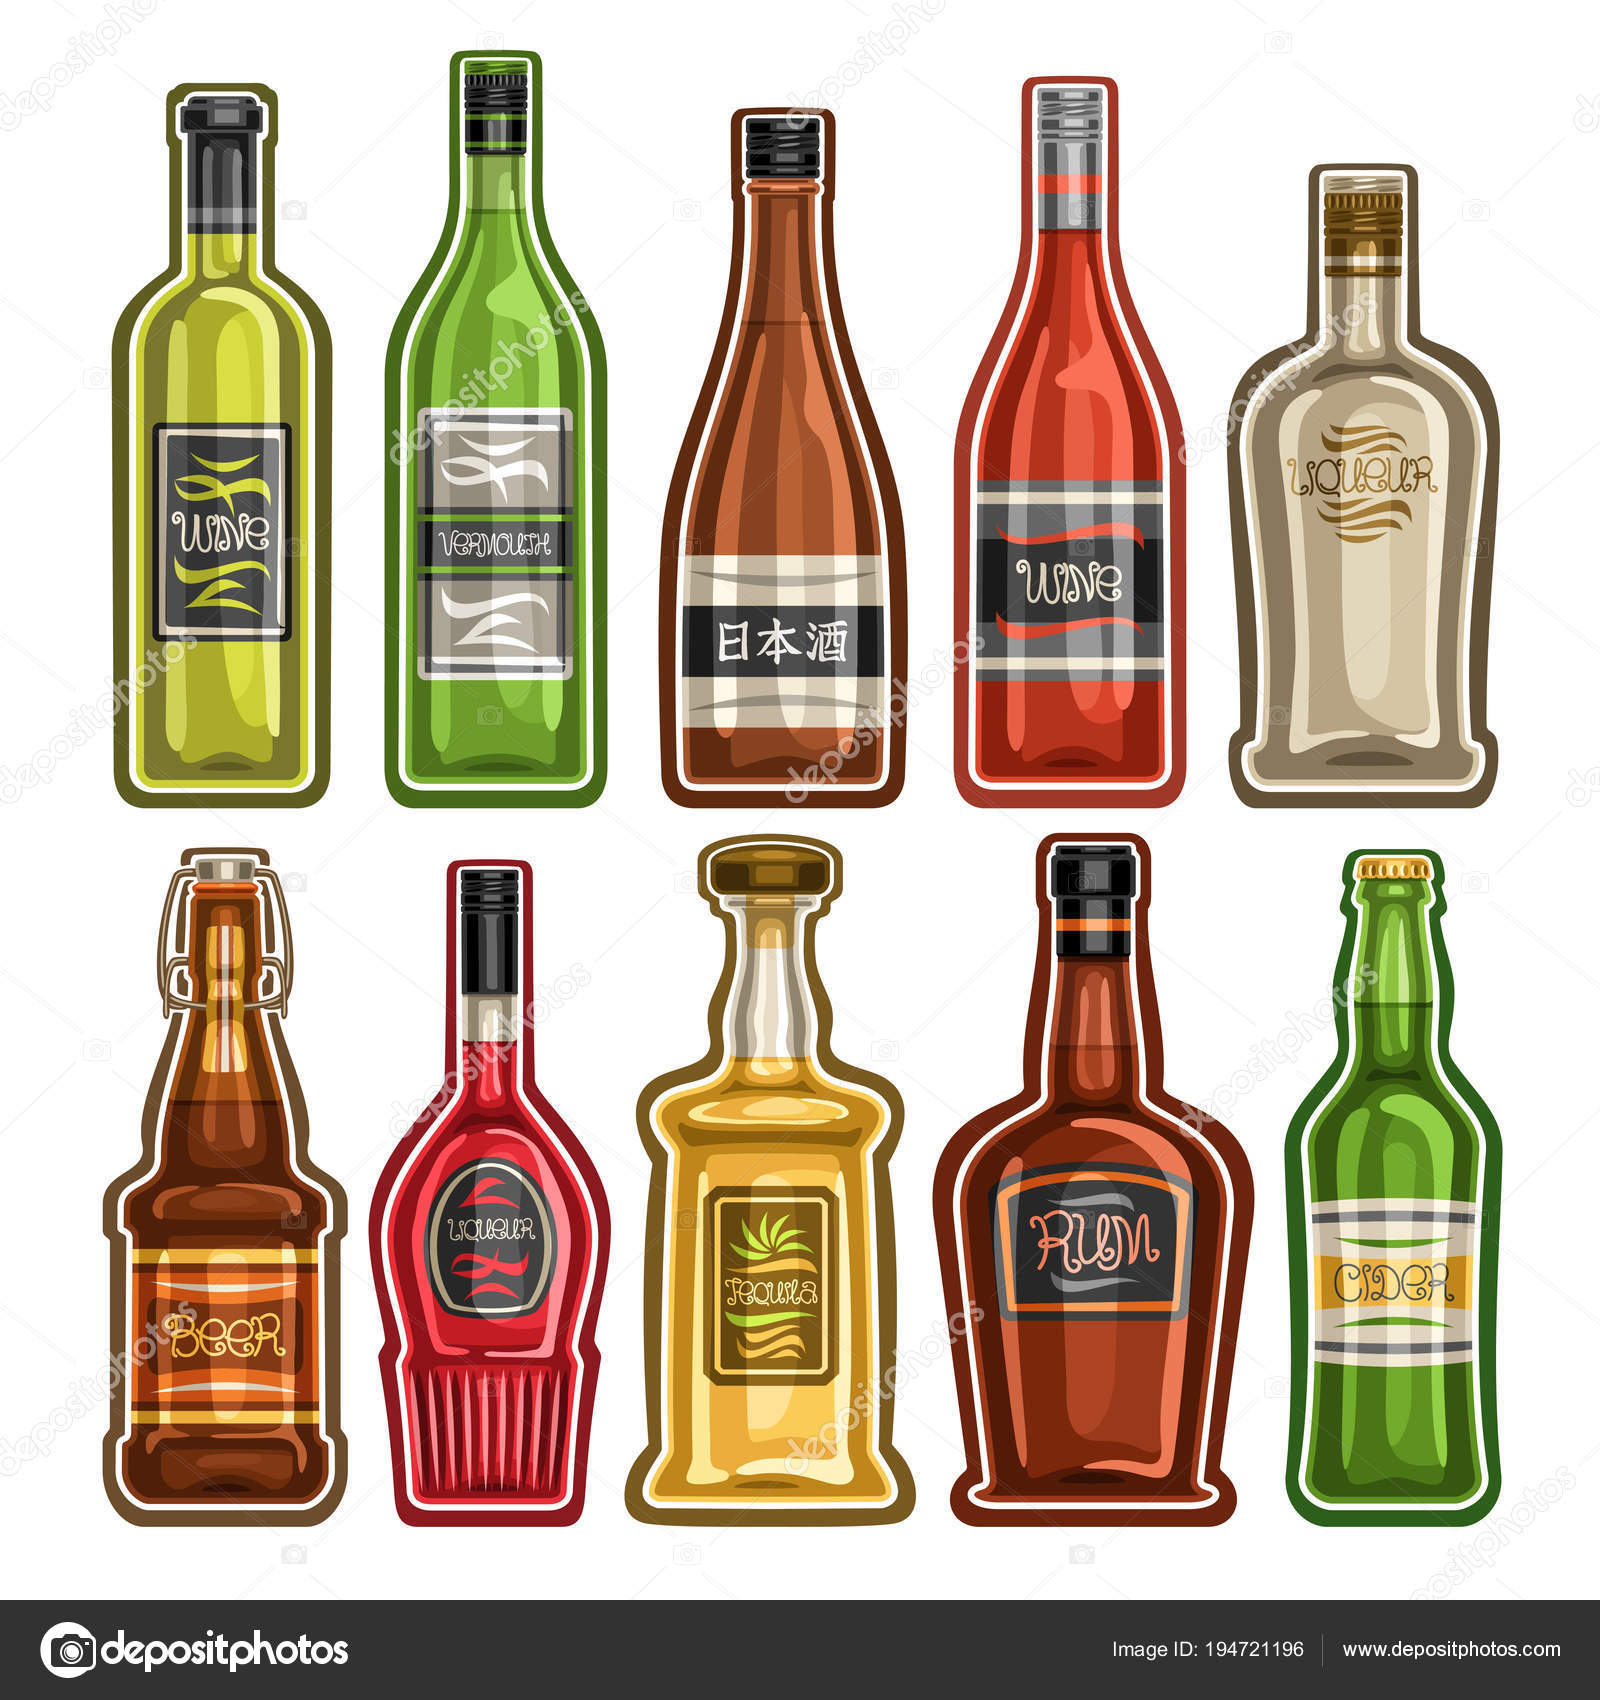 https://st3.depositphotos.com/1801497/19472/v/1600/depositphotos_194721196-stock-illustration-vector-set-different-bottles-full.jpg